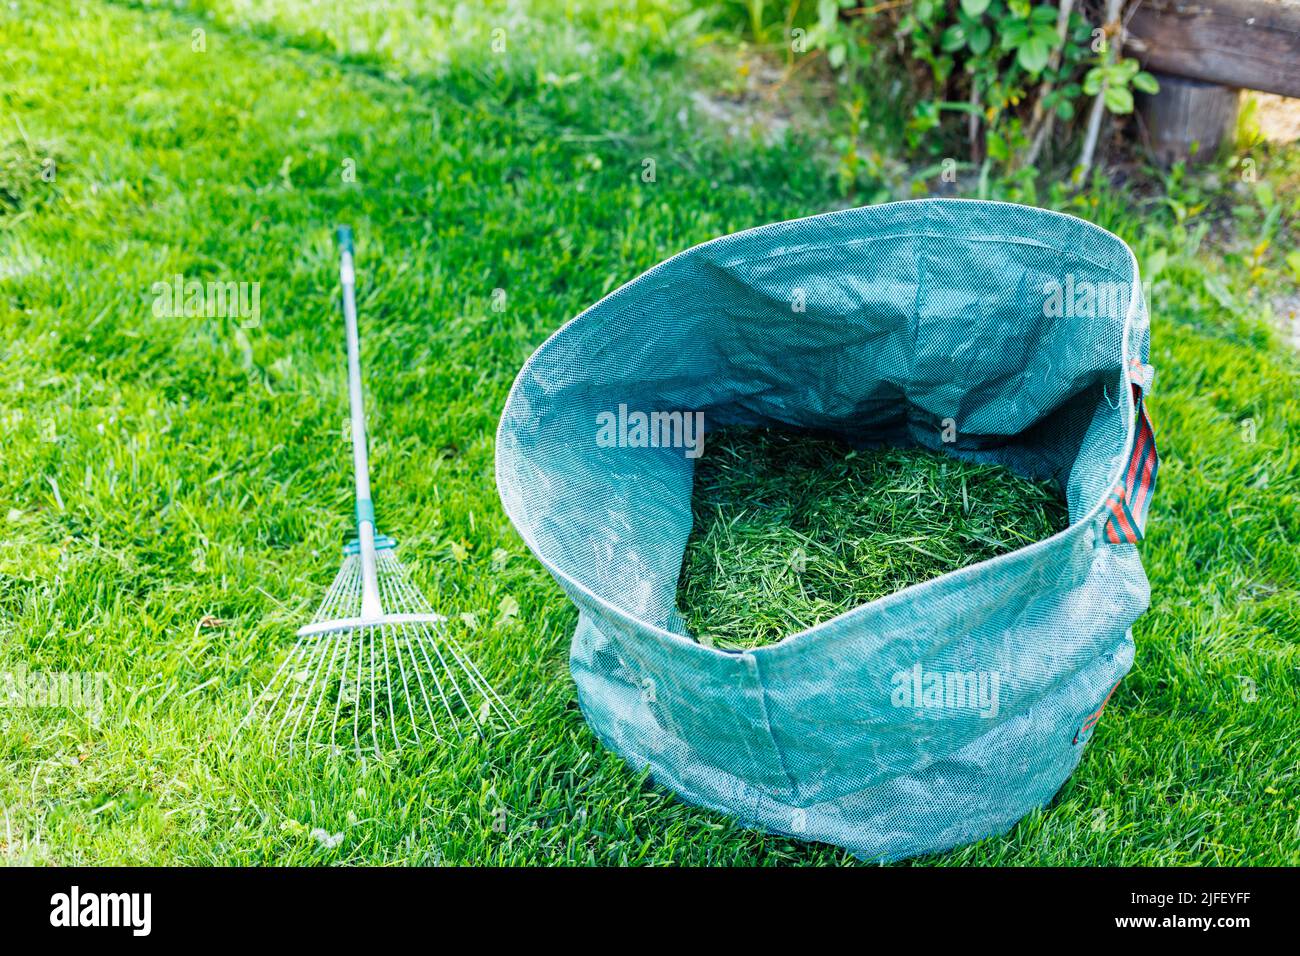 Herbe fraîche et naturelle coupée dans un sac bleu avec râteau sur une pelouse verte. Préparation du futur compost, engrais écologique. Recyclage Banque D'Images